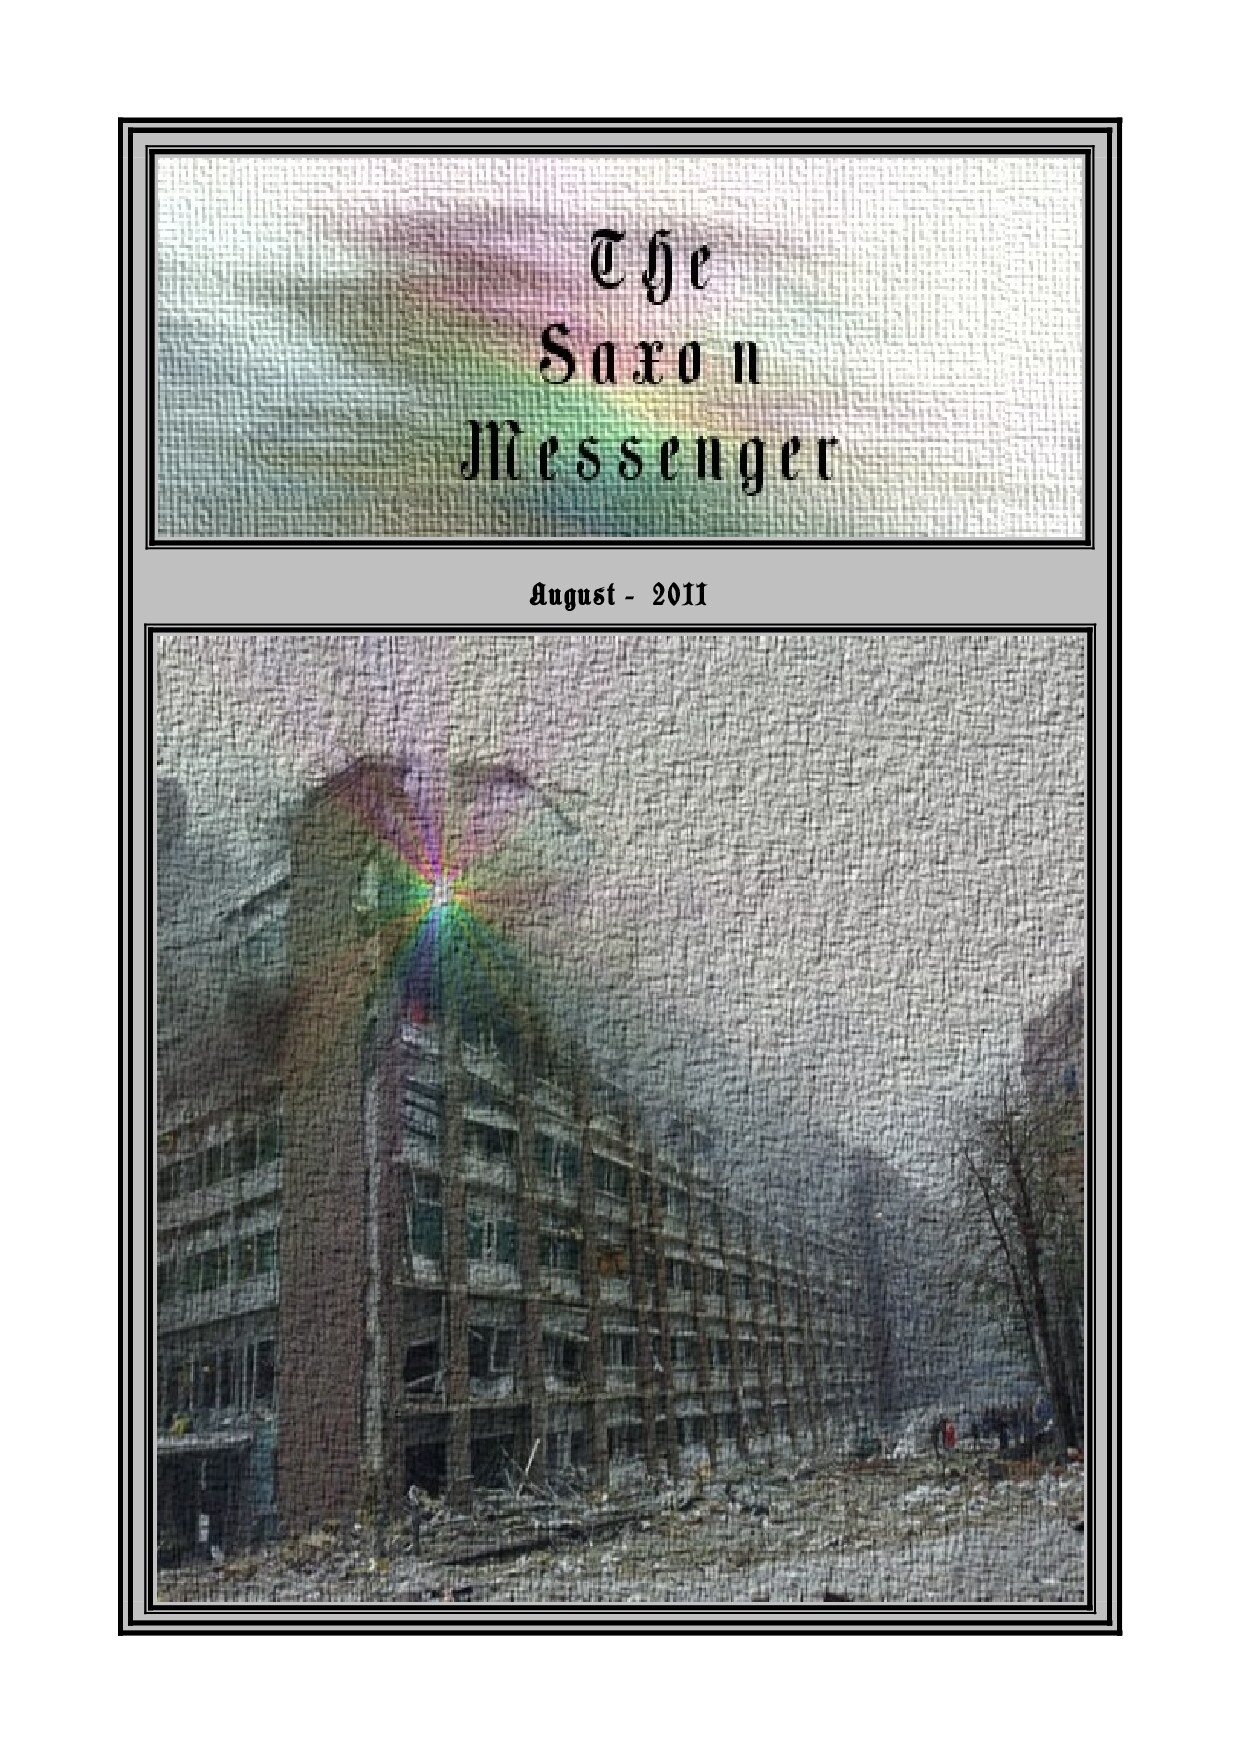 Saxon Messenger Issue 08 August 2011